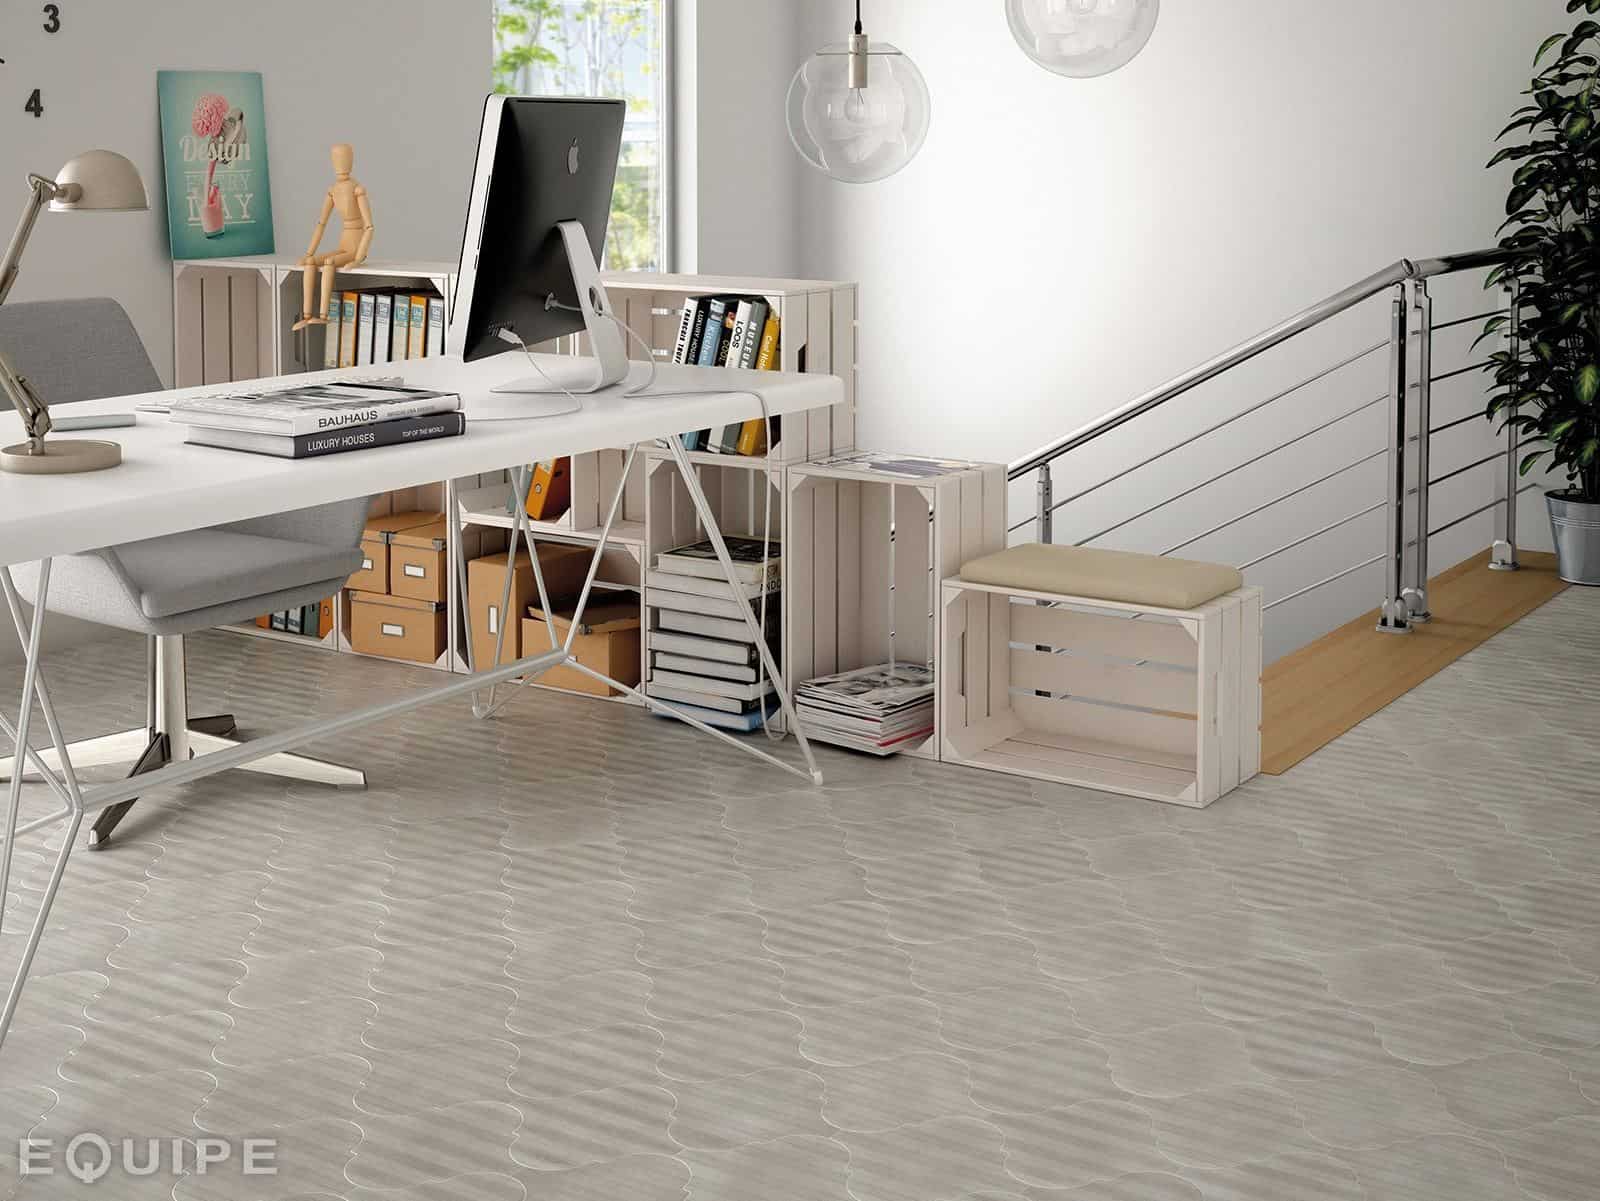 arabesque-tile-floor-office-equipe-13.jpg